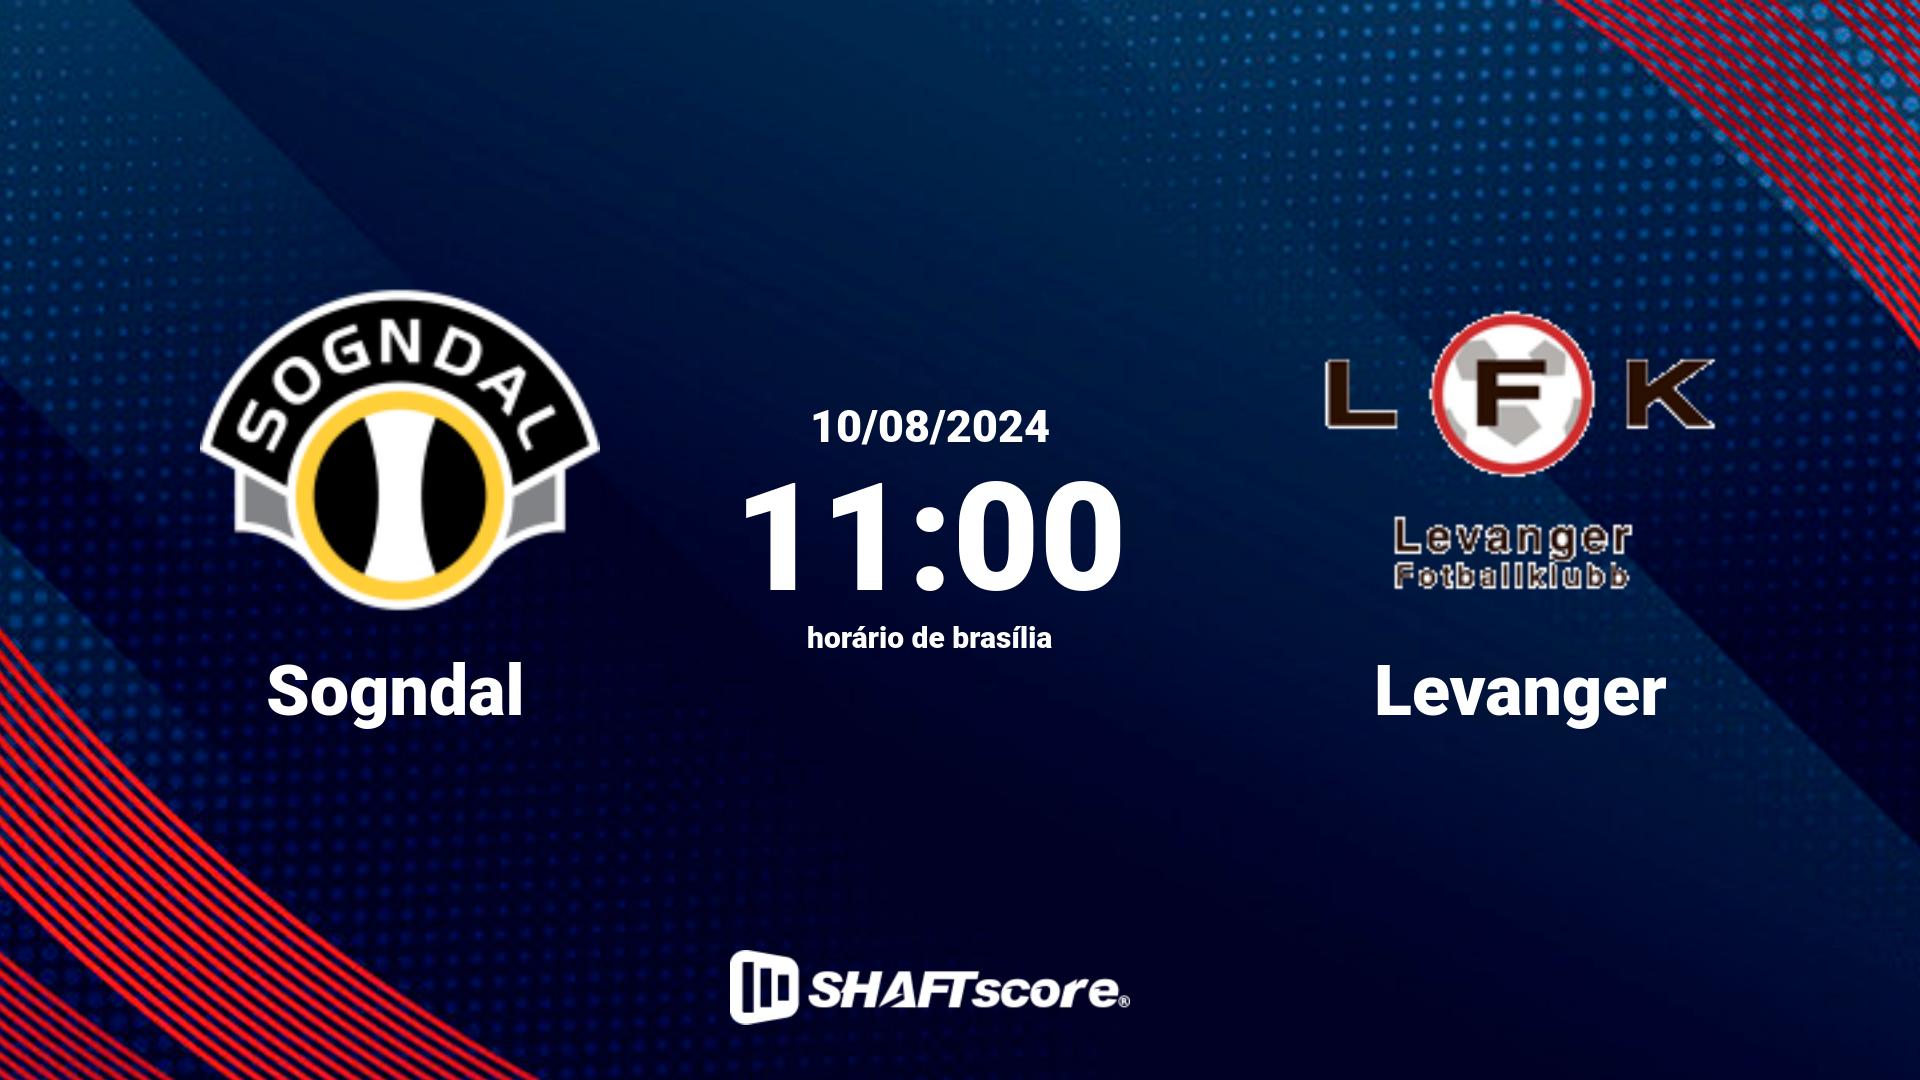 Estatísticas do jogo Sogndal vs Levanger 10.08 11:00